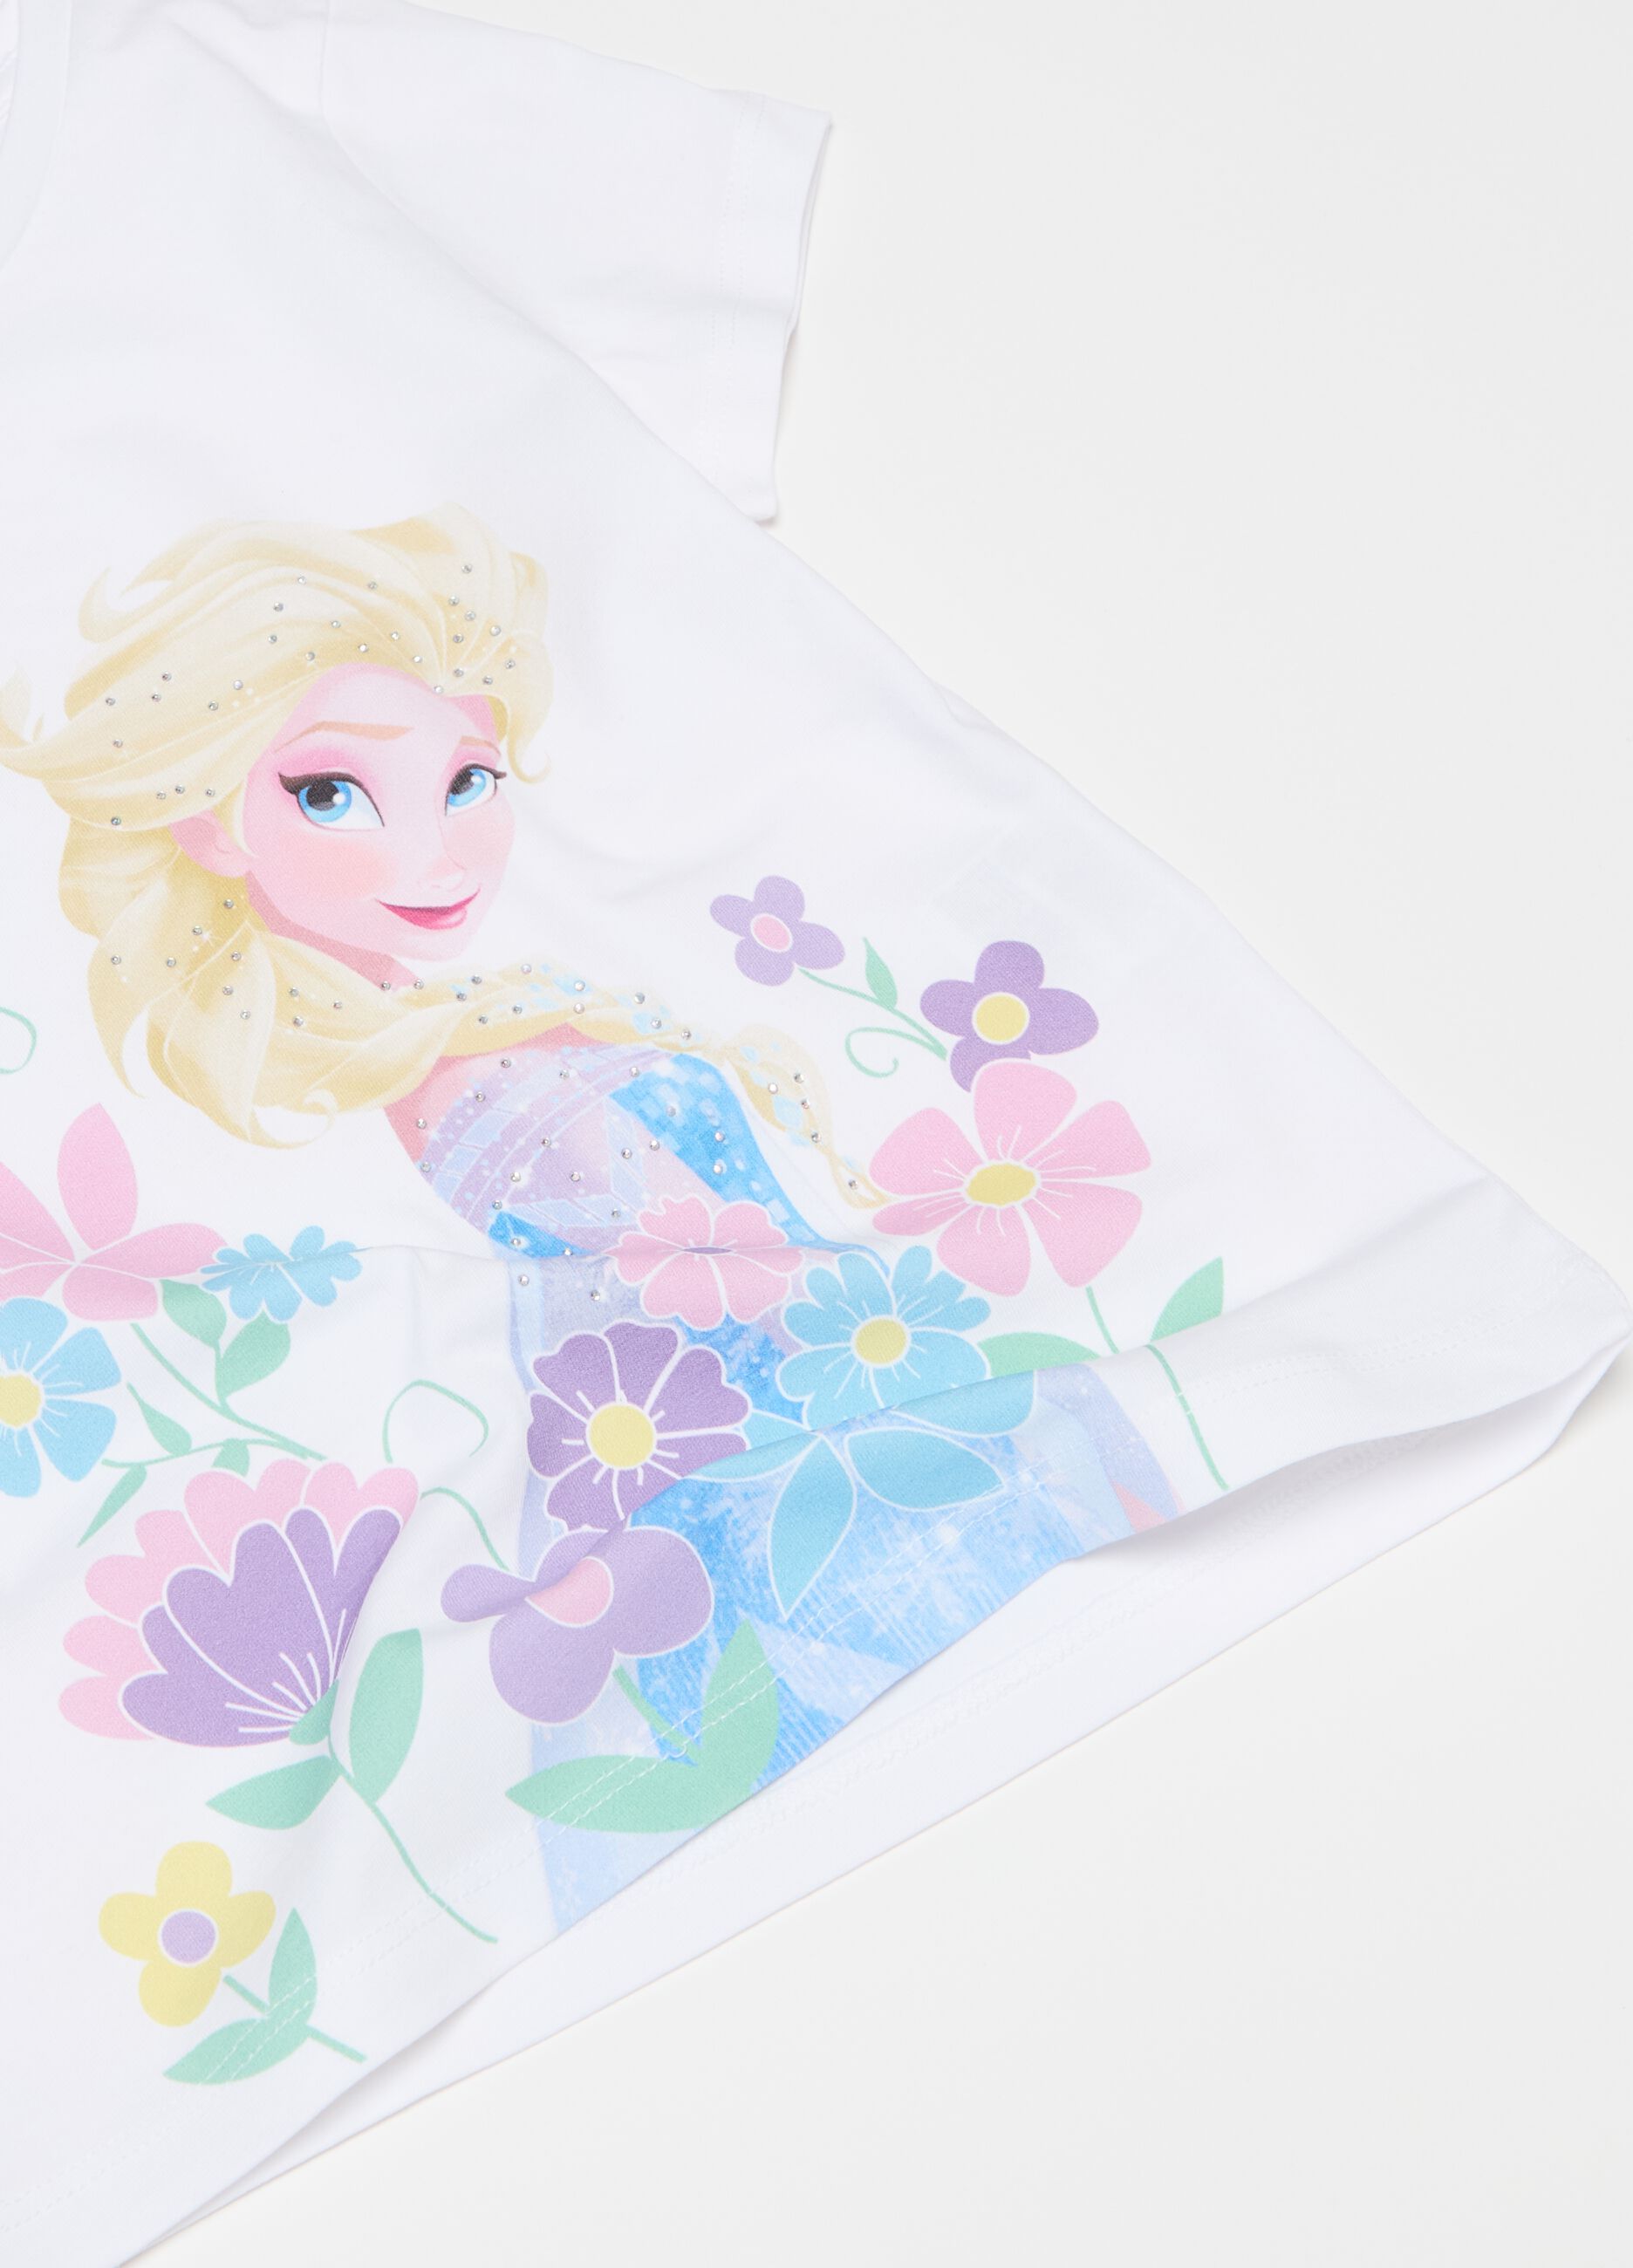 Camiseta con estampado Elsa y strass